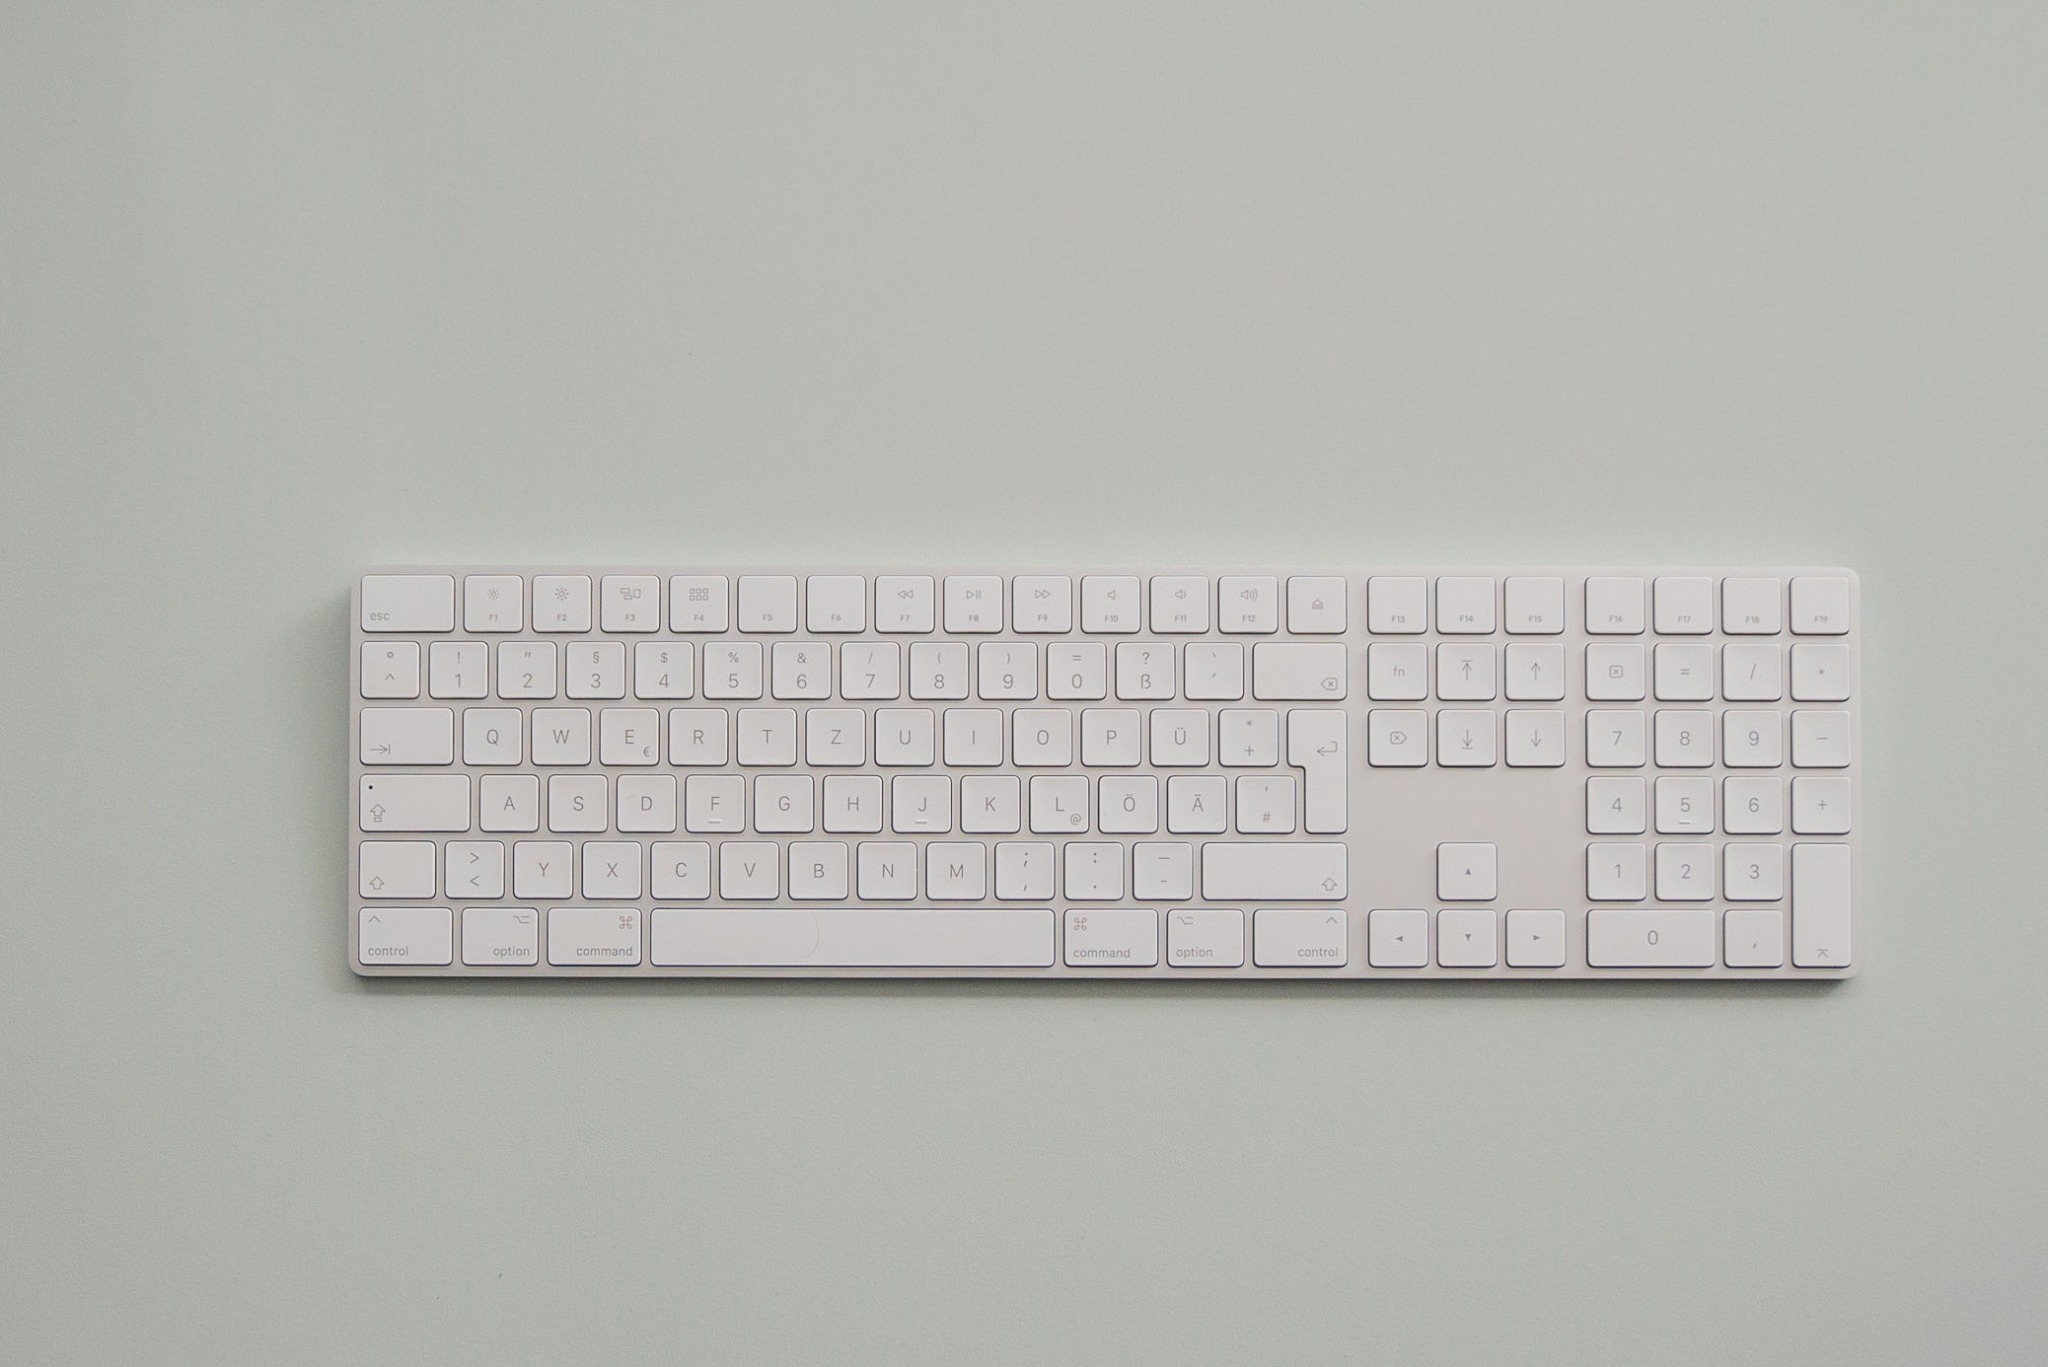 Original Apple-Tastaturen für eine optimale Nutzererfahrung
Umfassende Diagnose und Fehlerbehebung